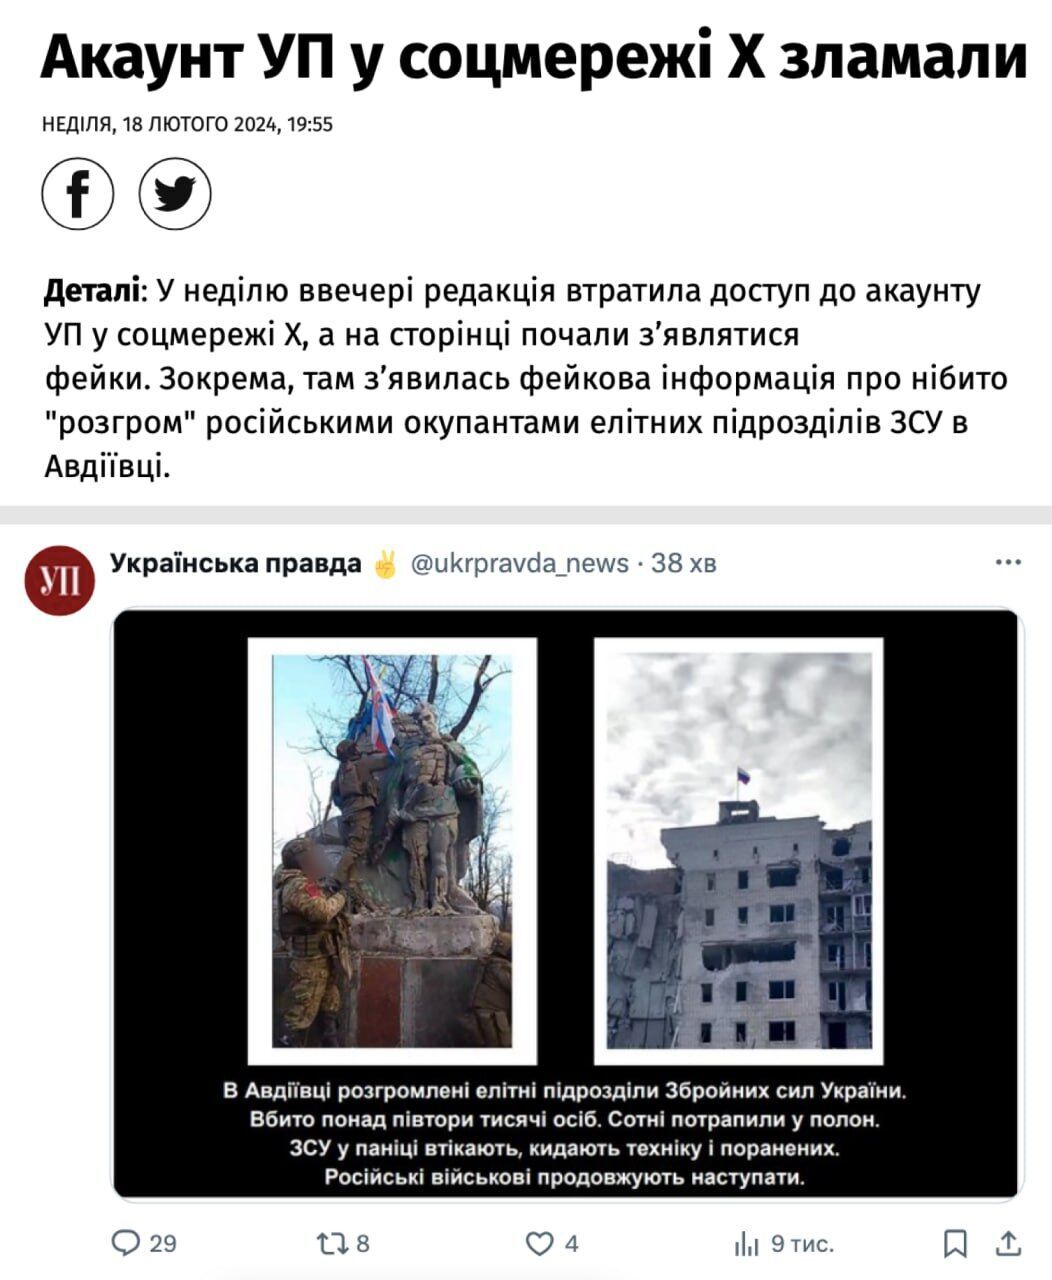 Аккаунт ''Украинской правде'' в соцсети Х (Twitter) был сломлен: детали